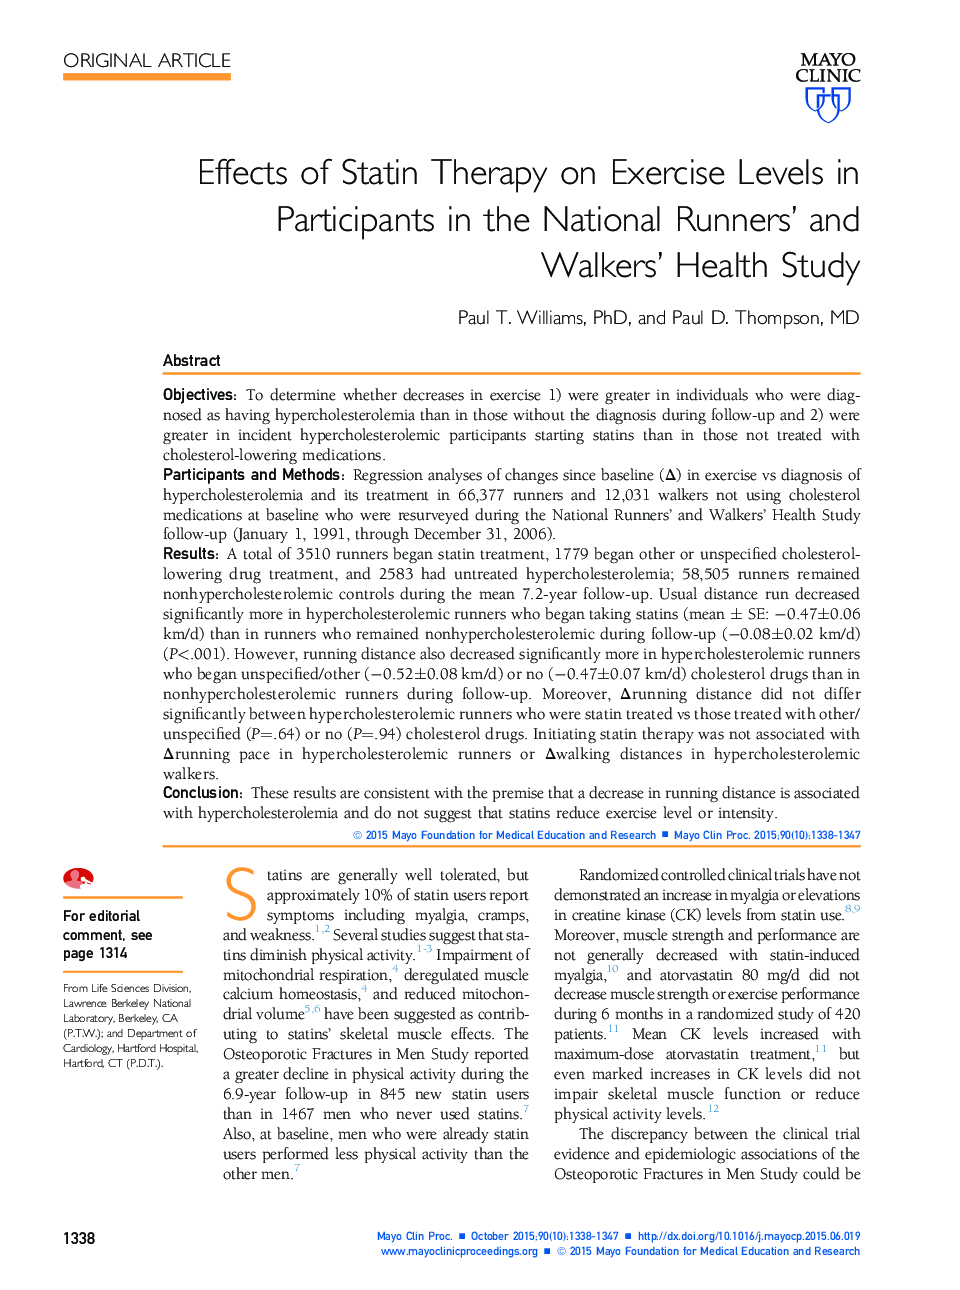 اثرات درمان استاتین بر سطح فعالیت در شرکت کنندگان در مطالعه سلامت رانندگان و پیاده روی ملی 